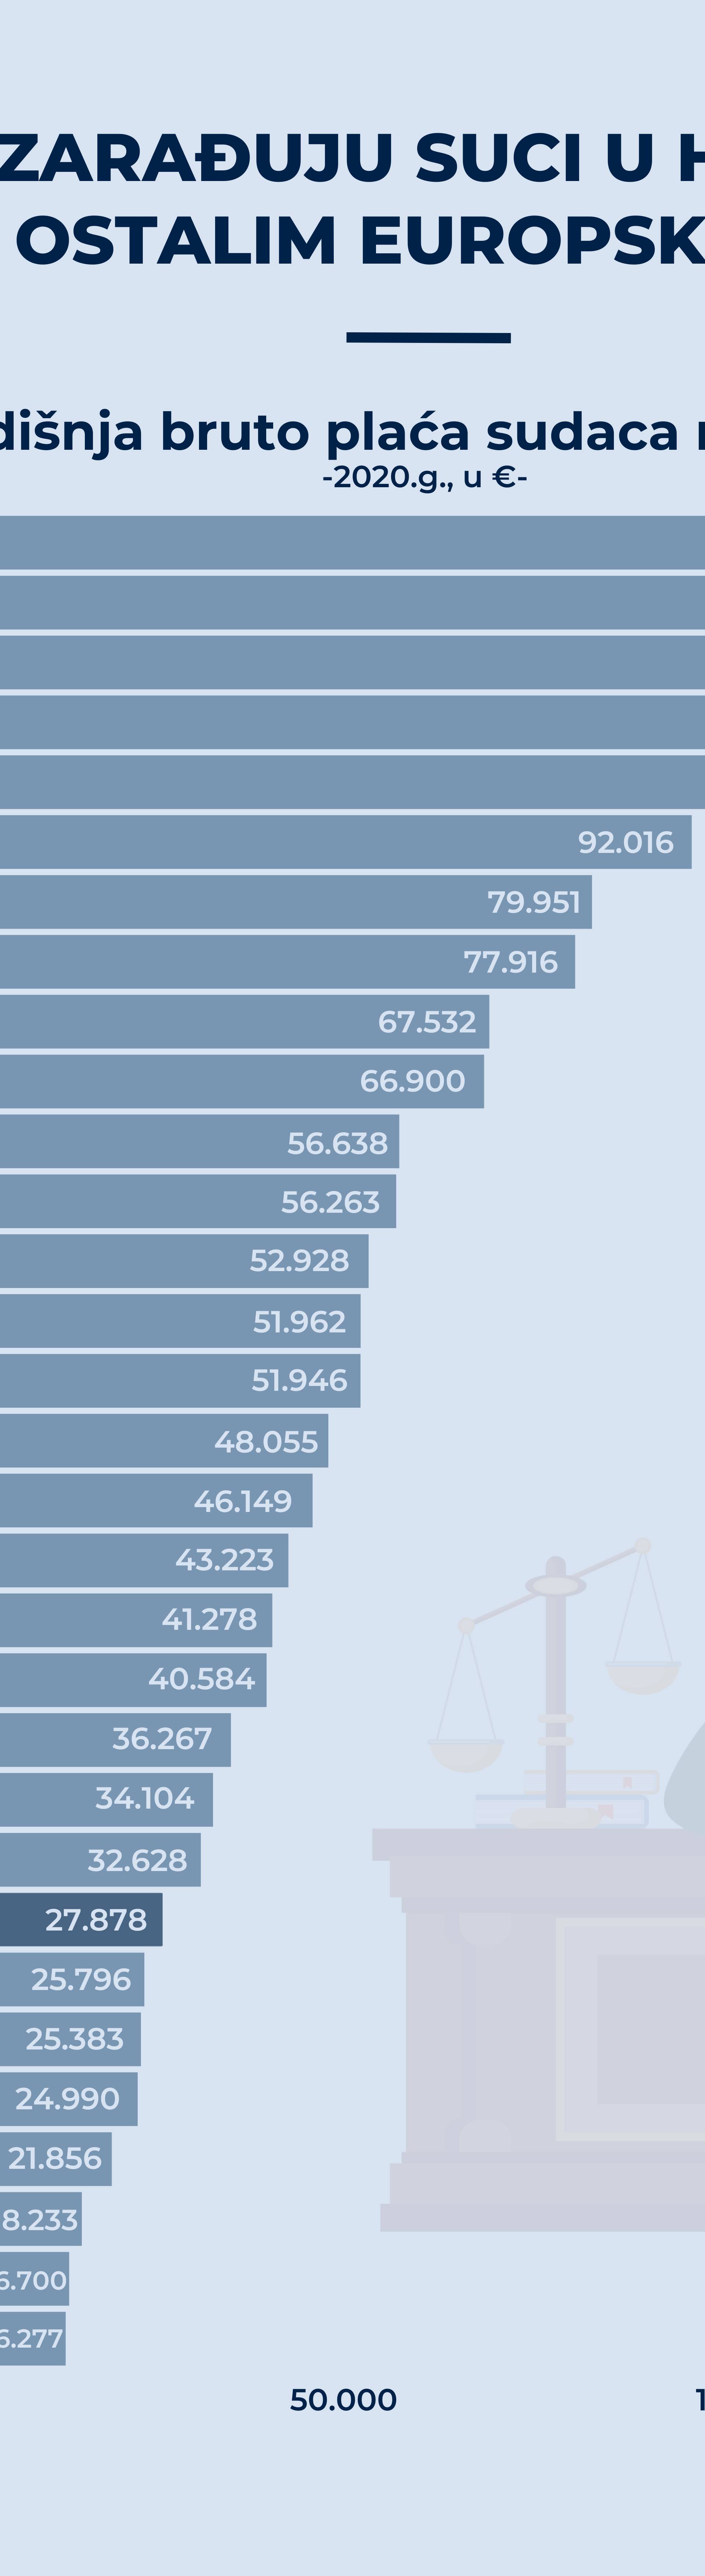 Infografika: Koliko zarađuju suci u Hrvatskoj, a koliko u drugim državama EU